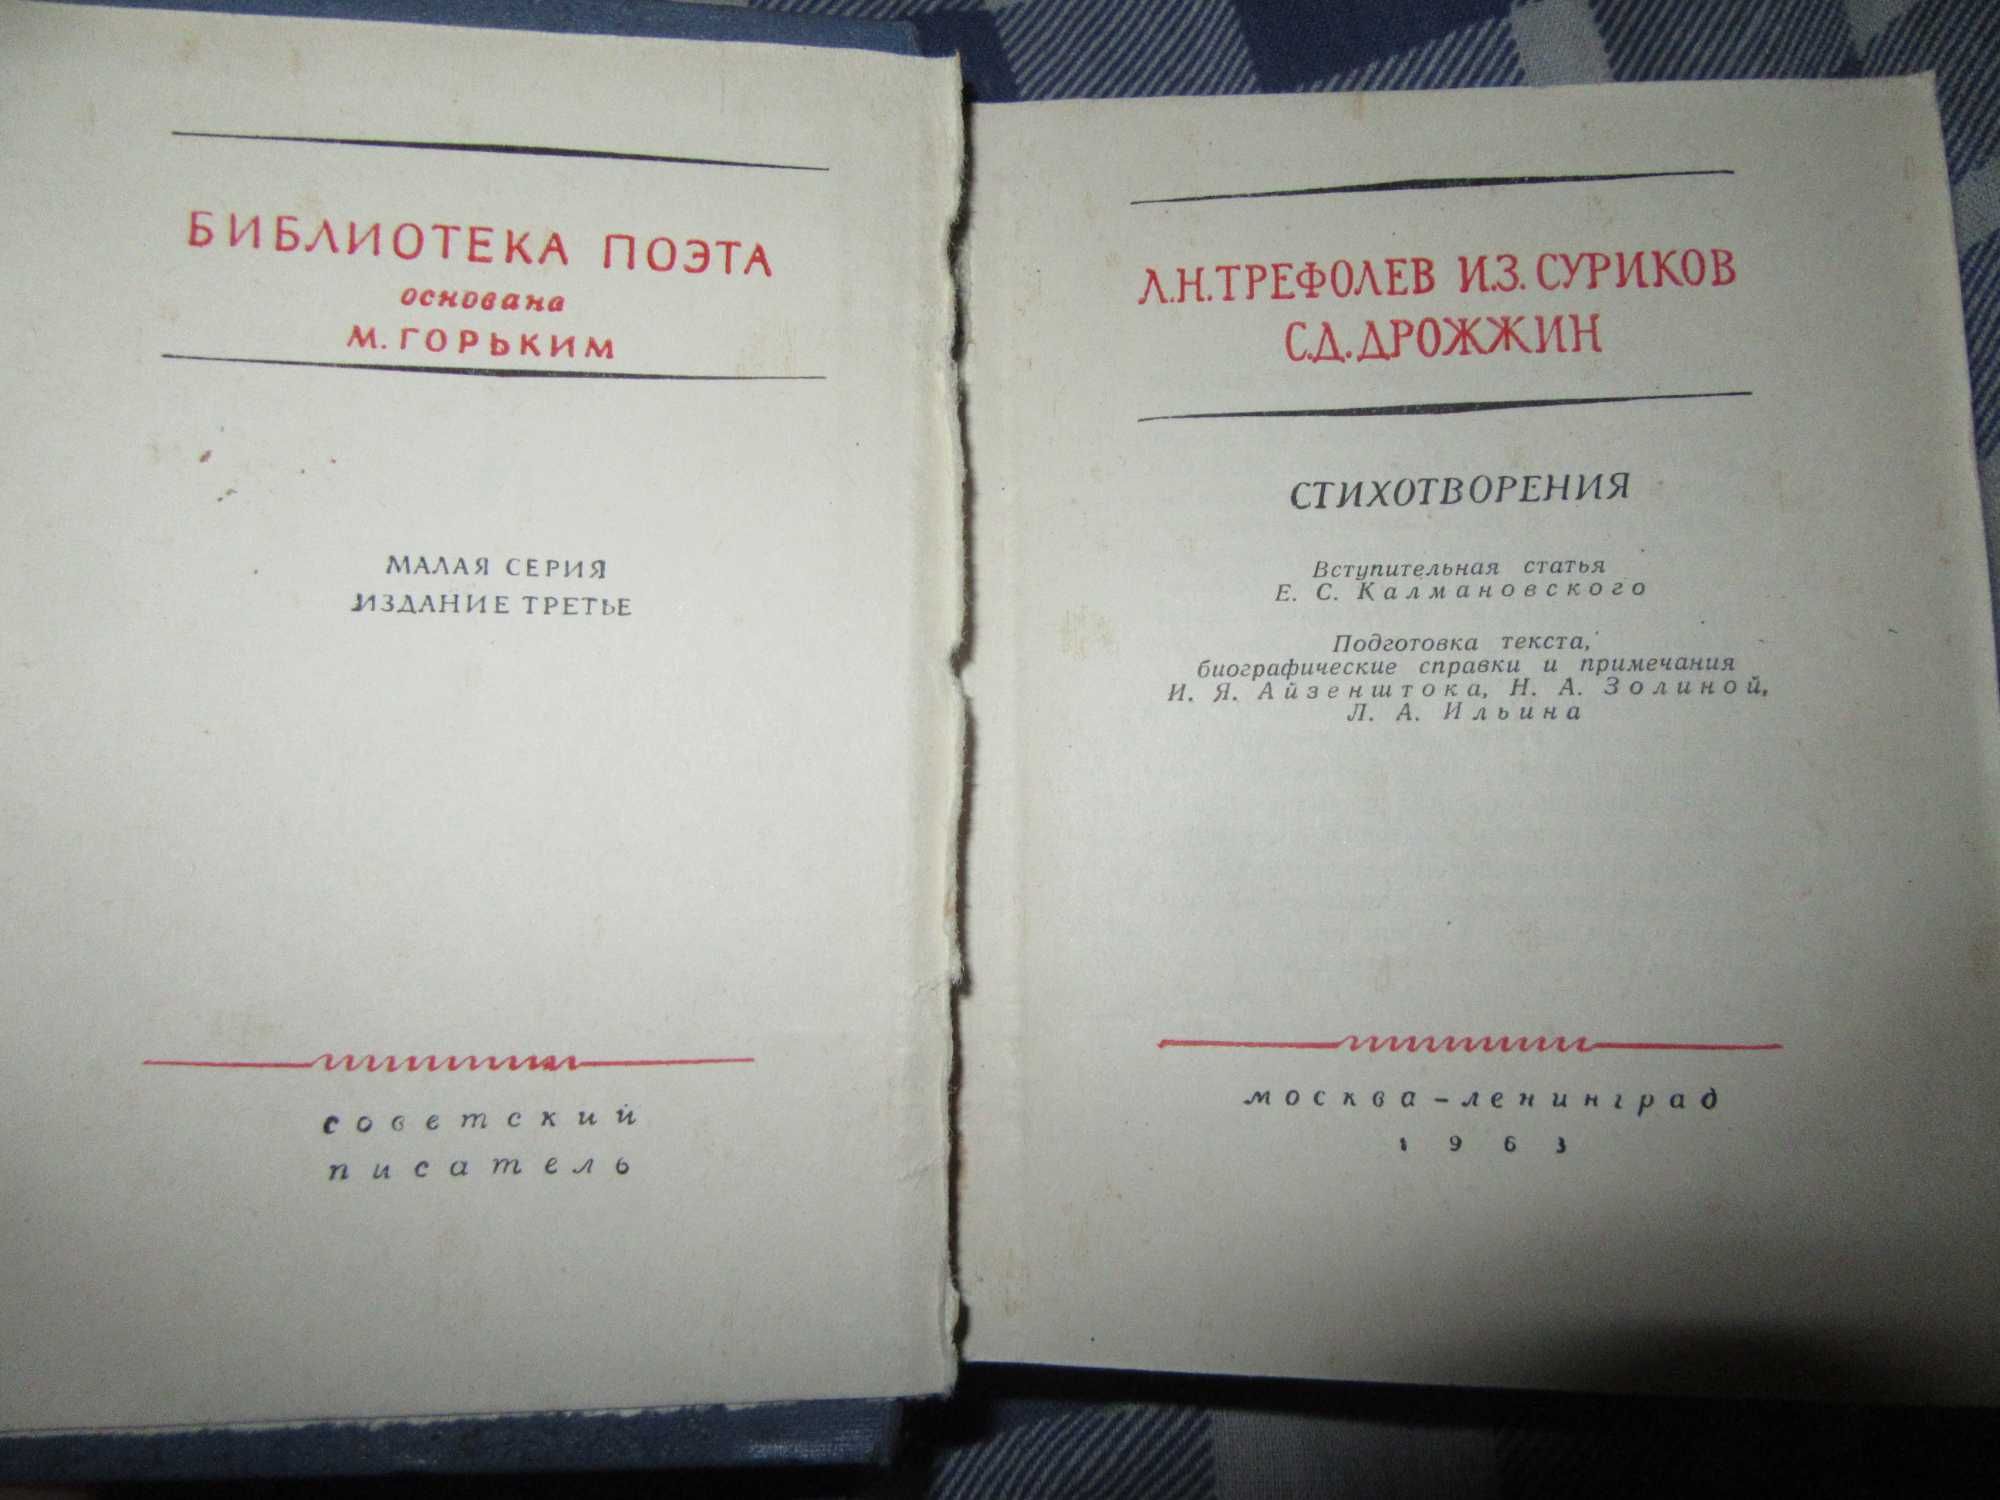 Трефолев Л.Н., Суриков И.З., Дрожжин С.Д.Библиотека поэта.1963 г.